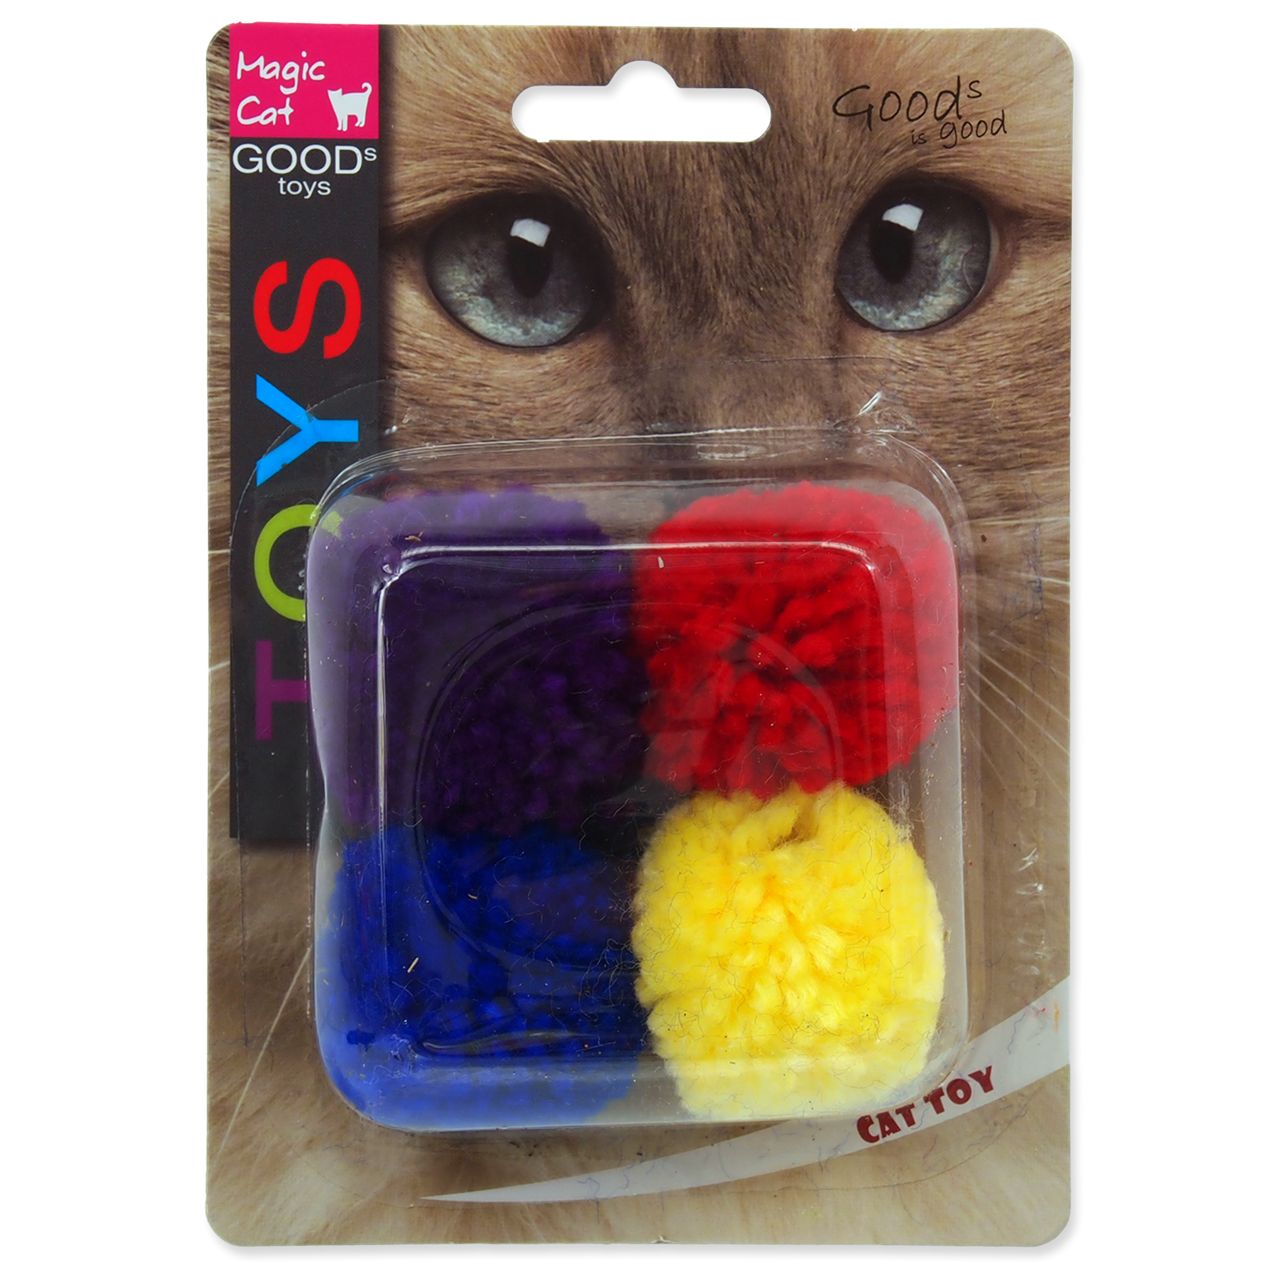 Мячи для кошек Magic Cat вата, желтый, красный, синий, фиолетовый, 3.75 см, 4 шт